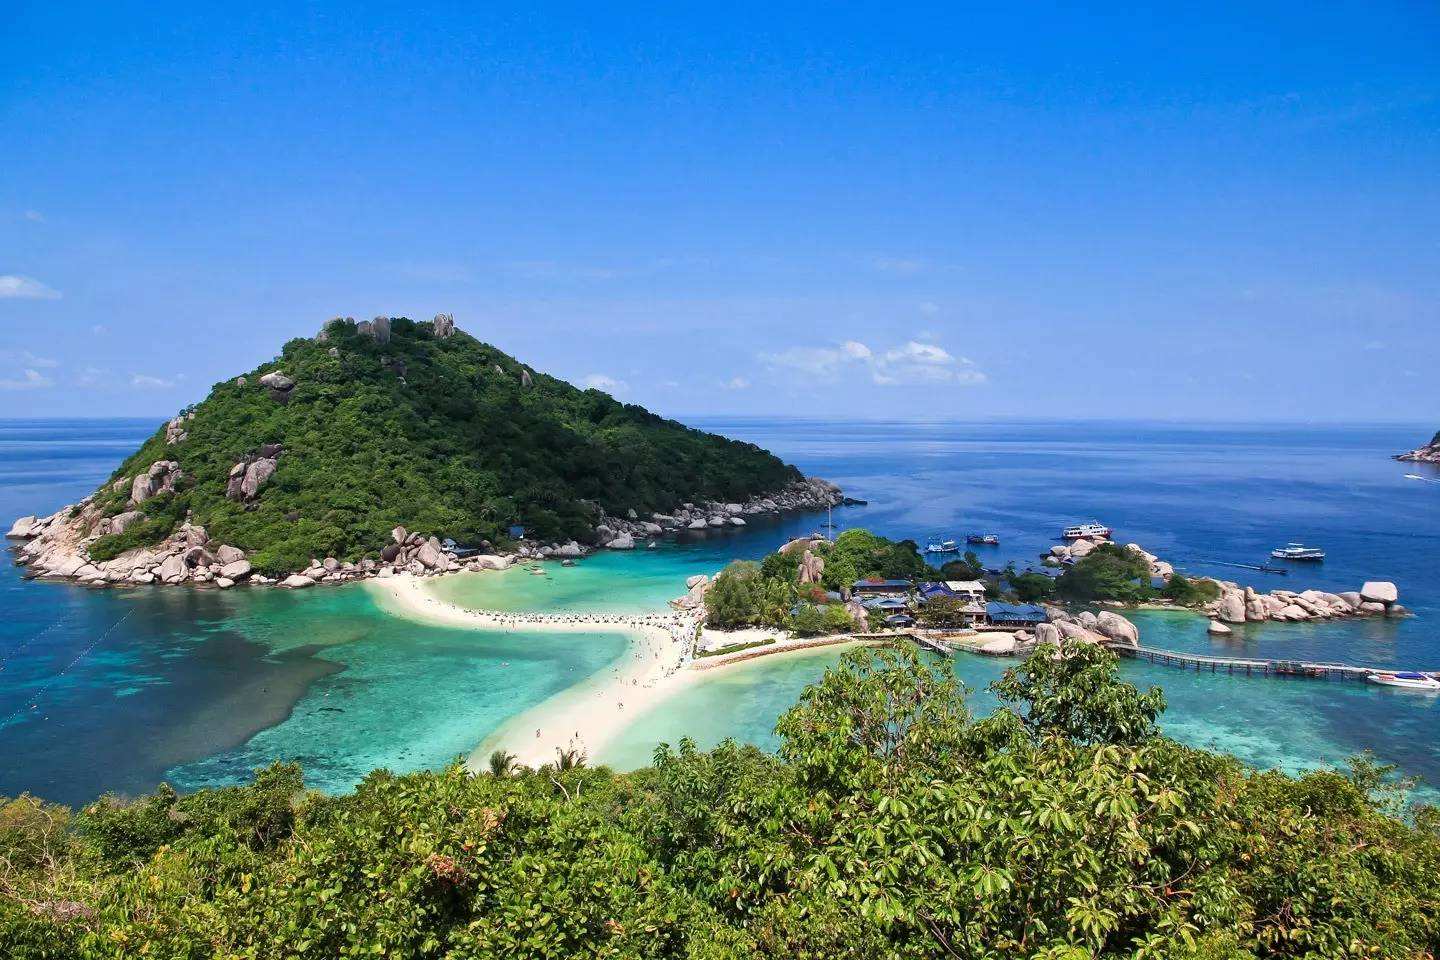 「泰国沙美岛旅游风景视频」✅ 泰国沙美岛旅游风景视频高清